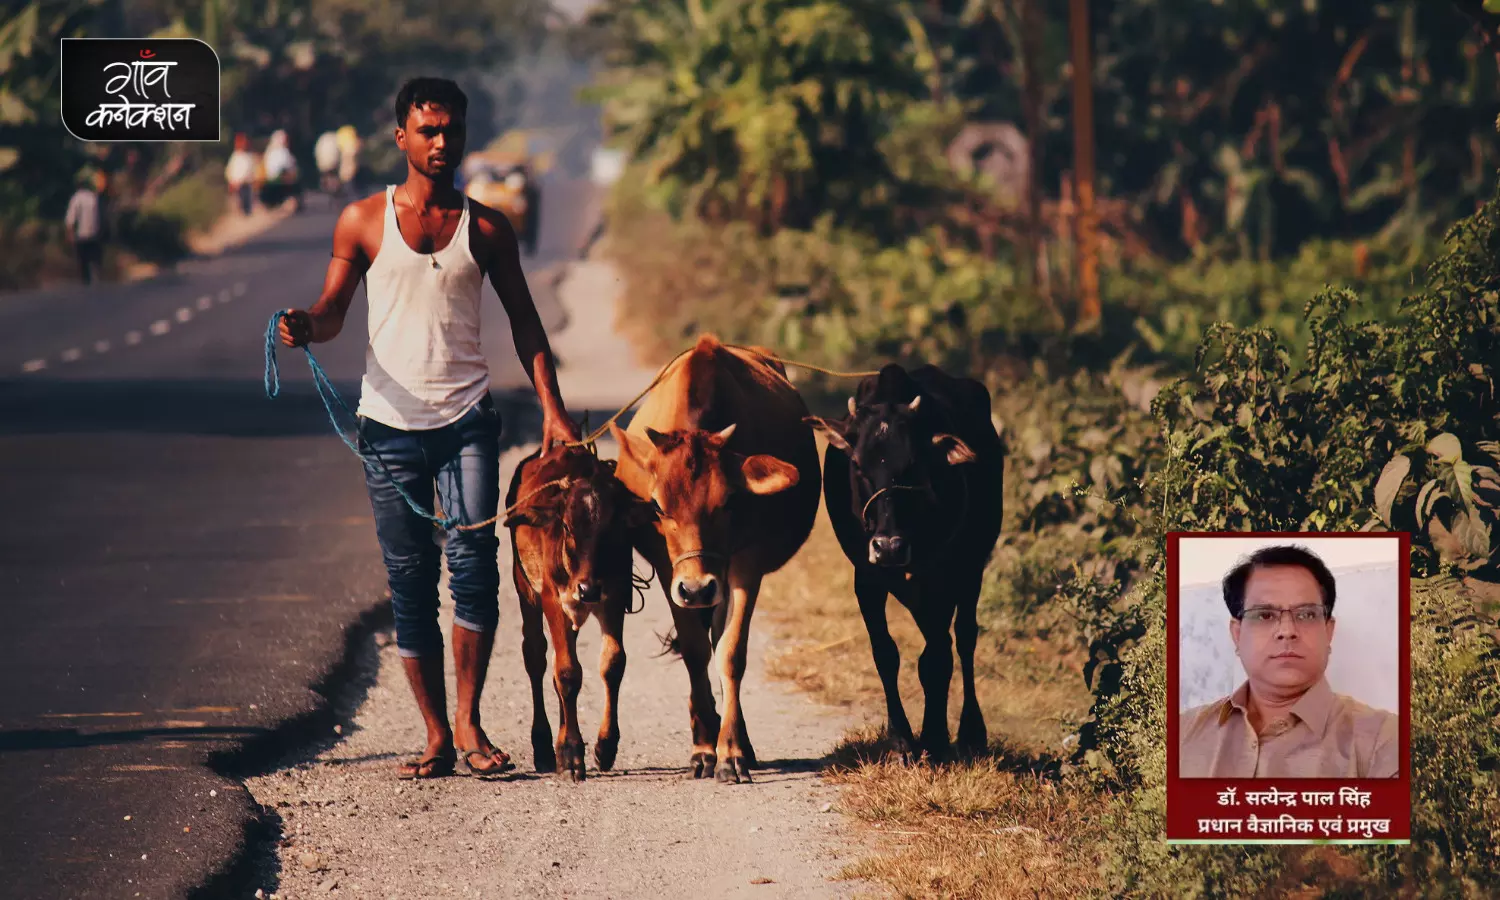 आदिकाल से लेकर आधुनिक भारत तक के सफर में रहा है देसी गायों का योगदान, क्या उसे भुलाया जा सकता है?